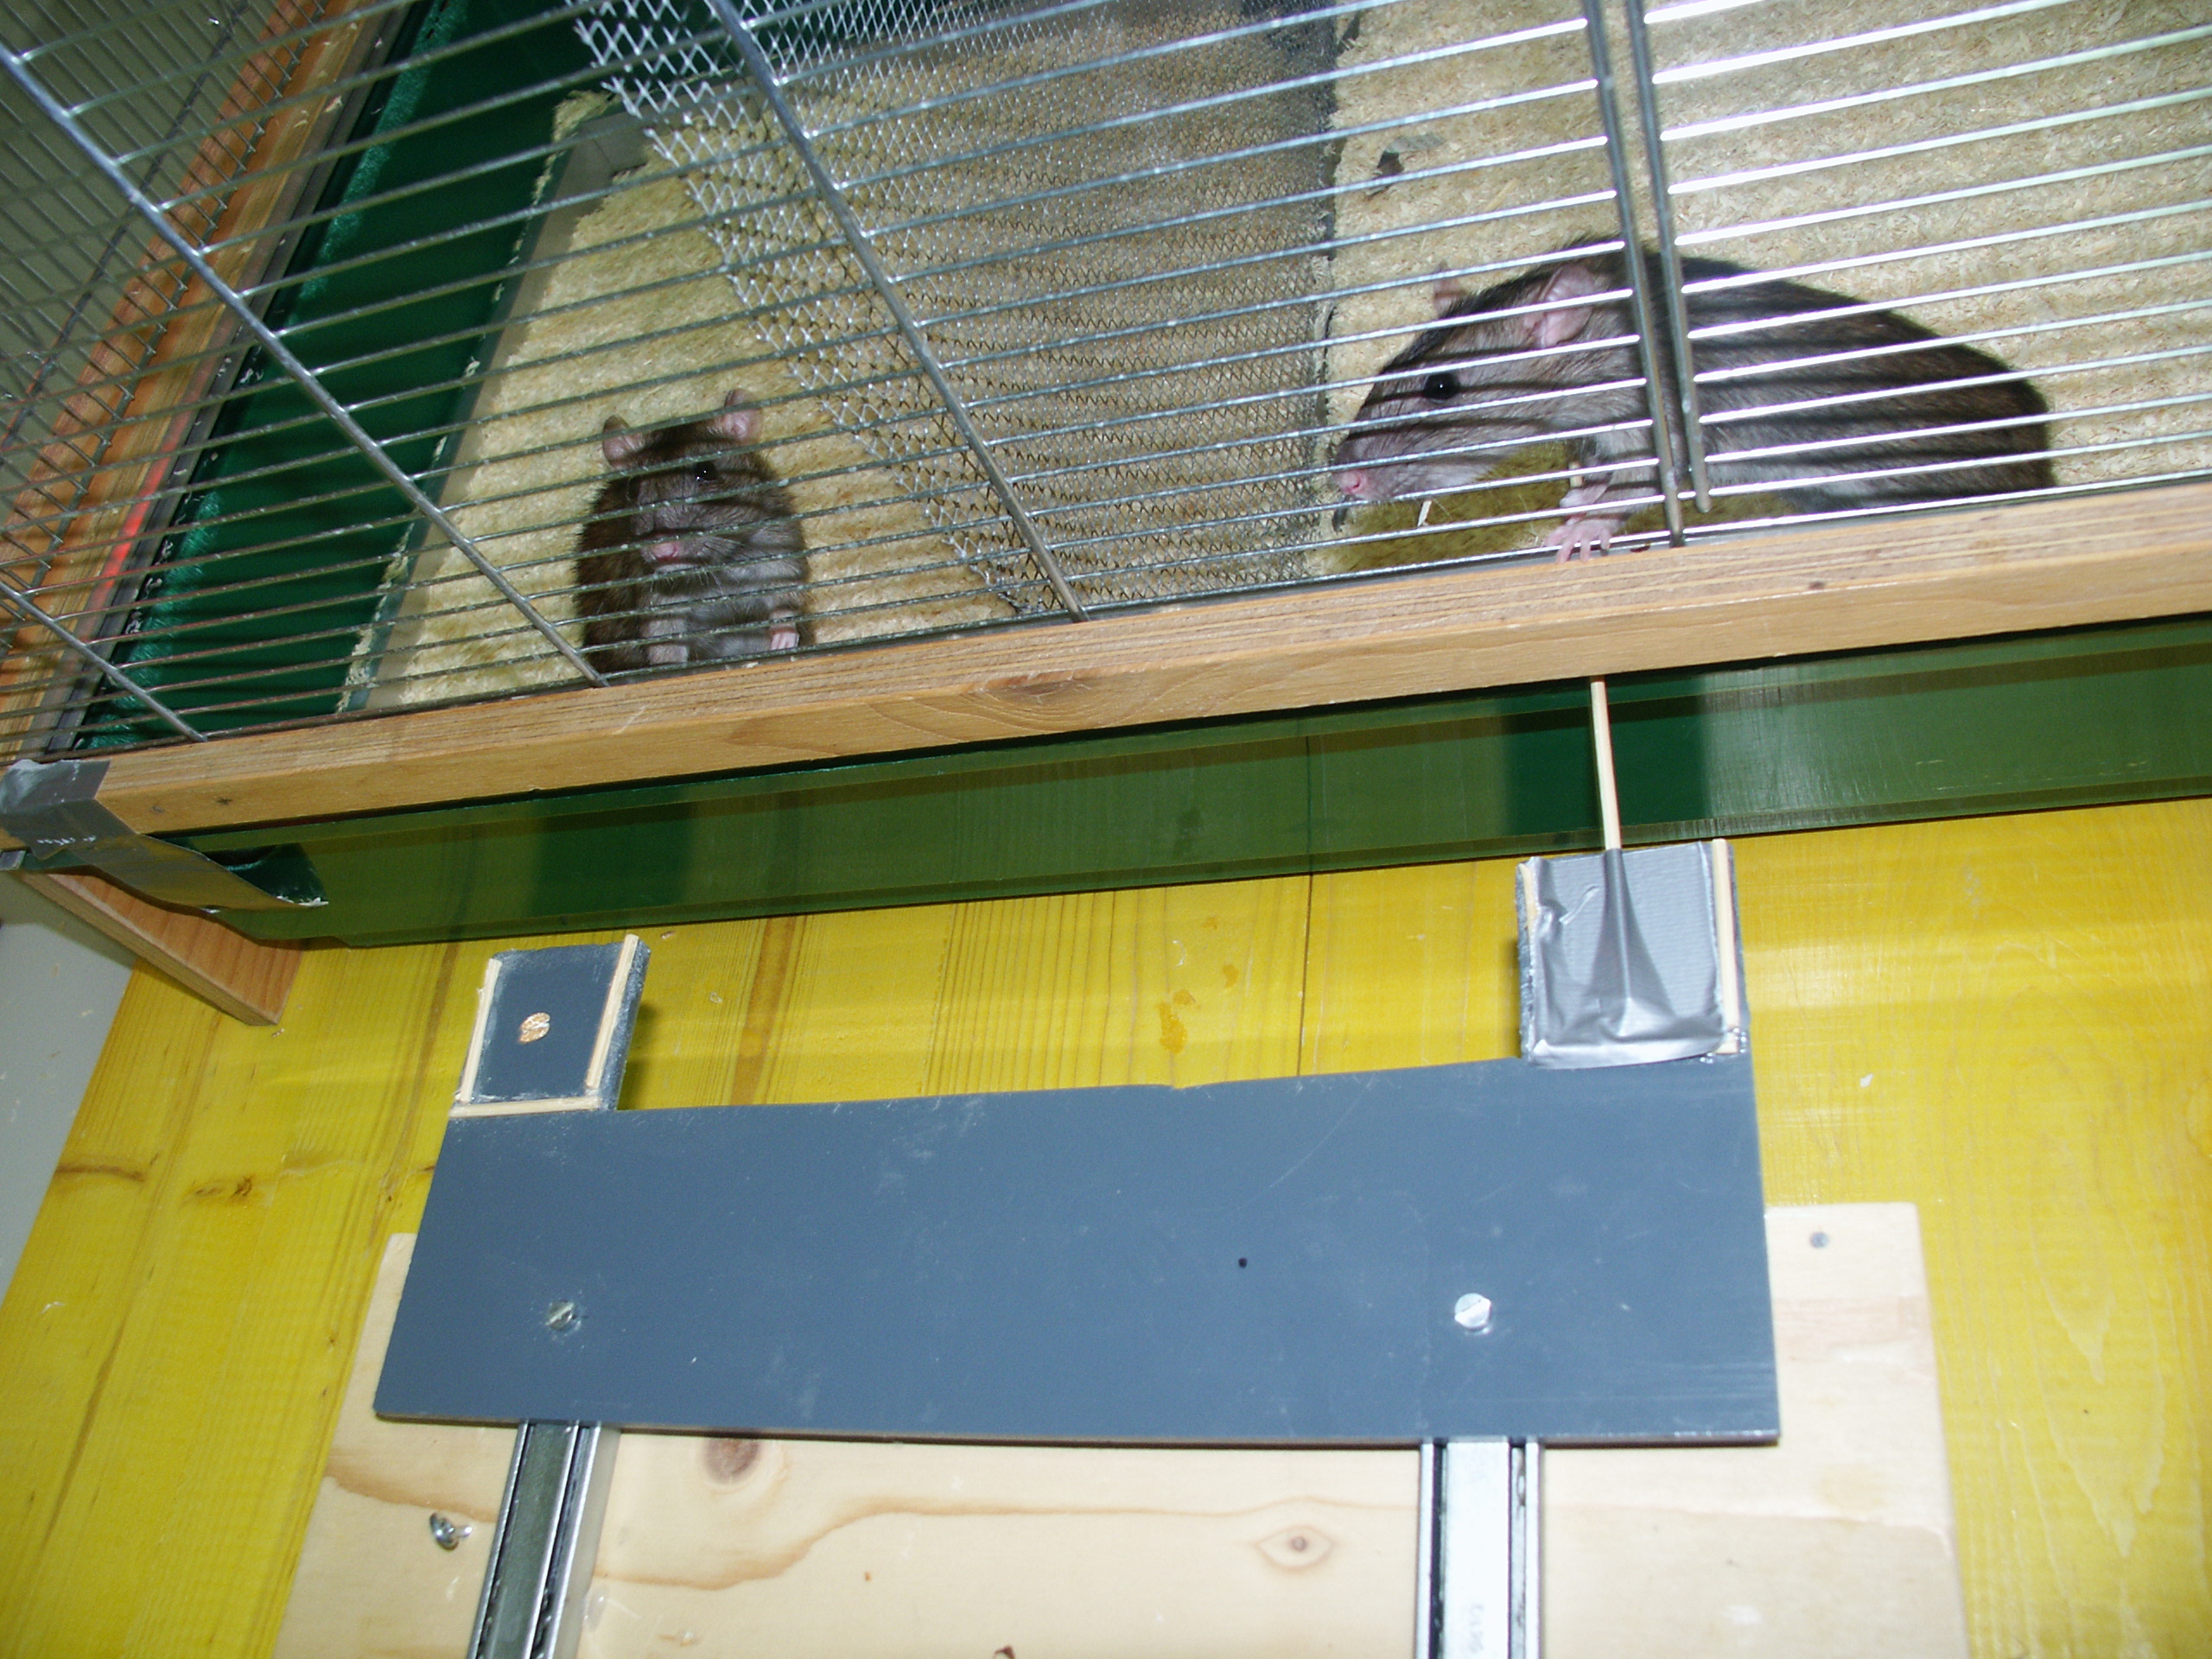 Die Ratte auf der rechten Seite zieht eine Plattform in Richtung des Käfigs, sodass die Ratte im linken Abteil Futter bekommt (eine Haferflocke). Die ziehende Ratte erhält dabei selbst keine Belohnung. Bild: Res Schmid